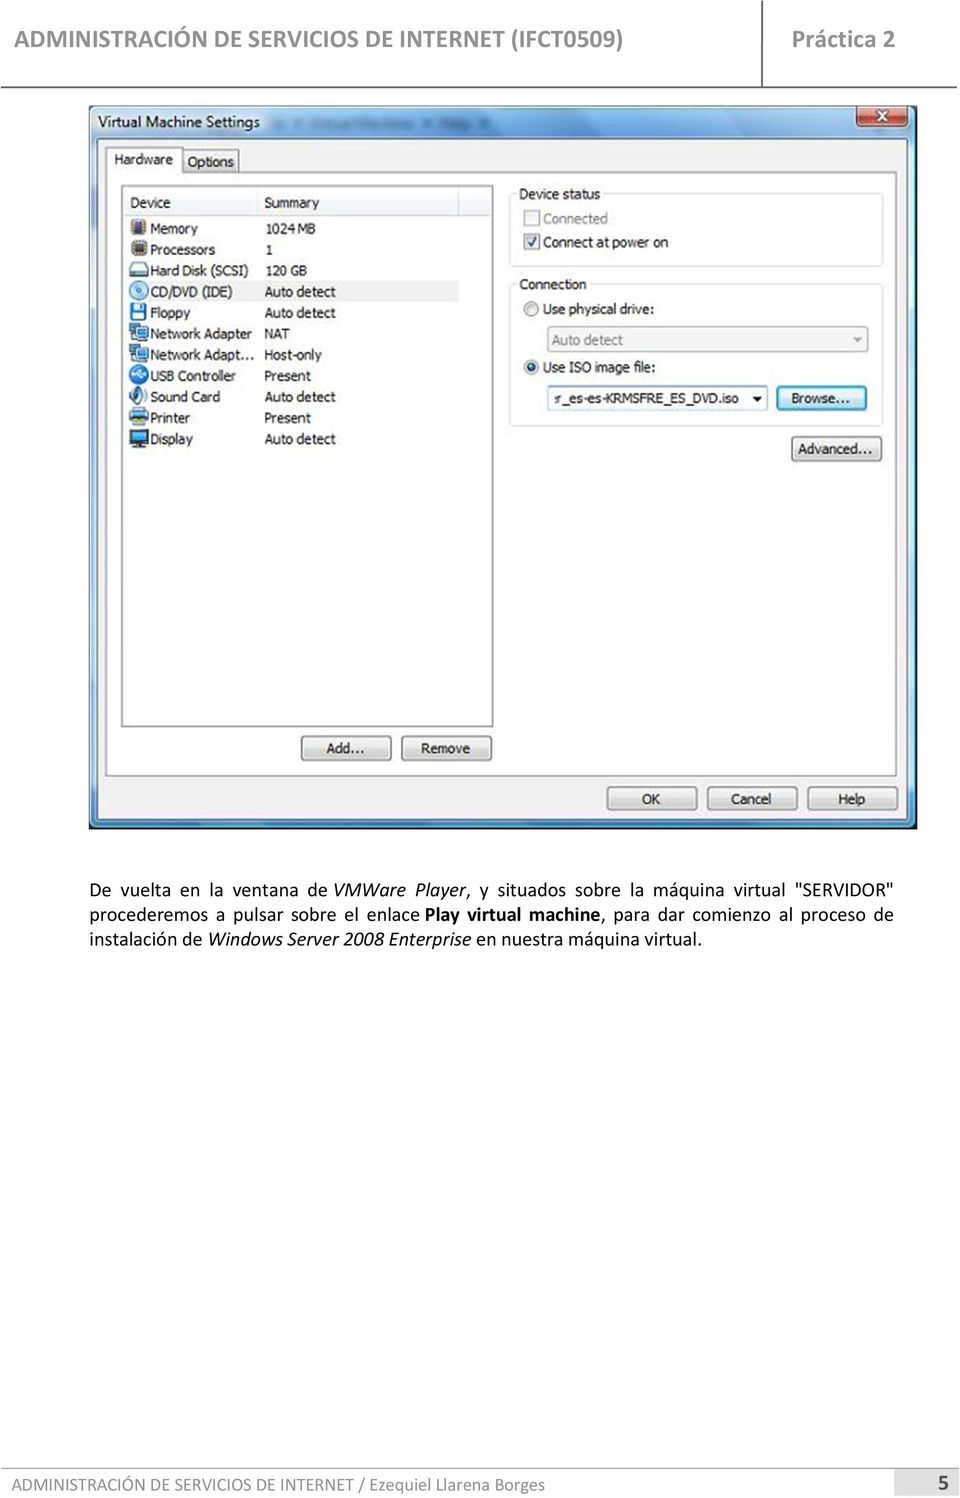 Play virtual machine, para dar comienzo al proceso de instalación de Windows Server 2008